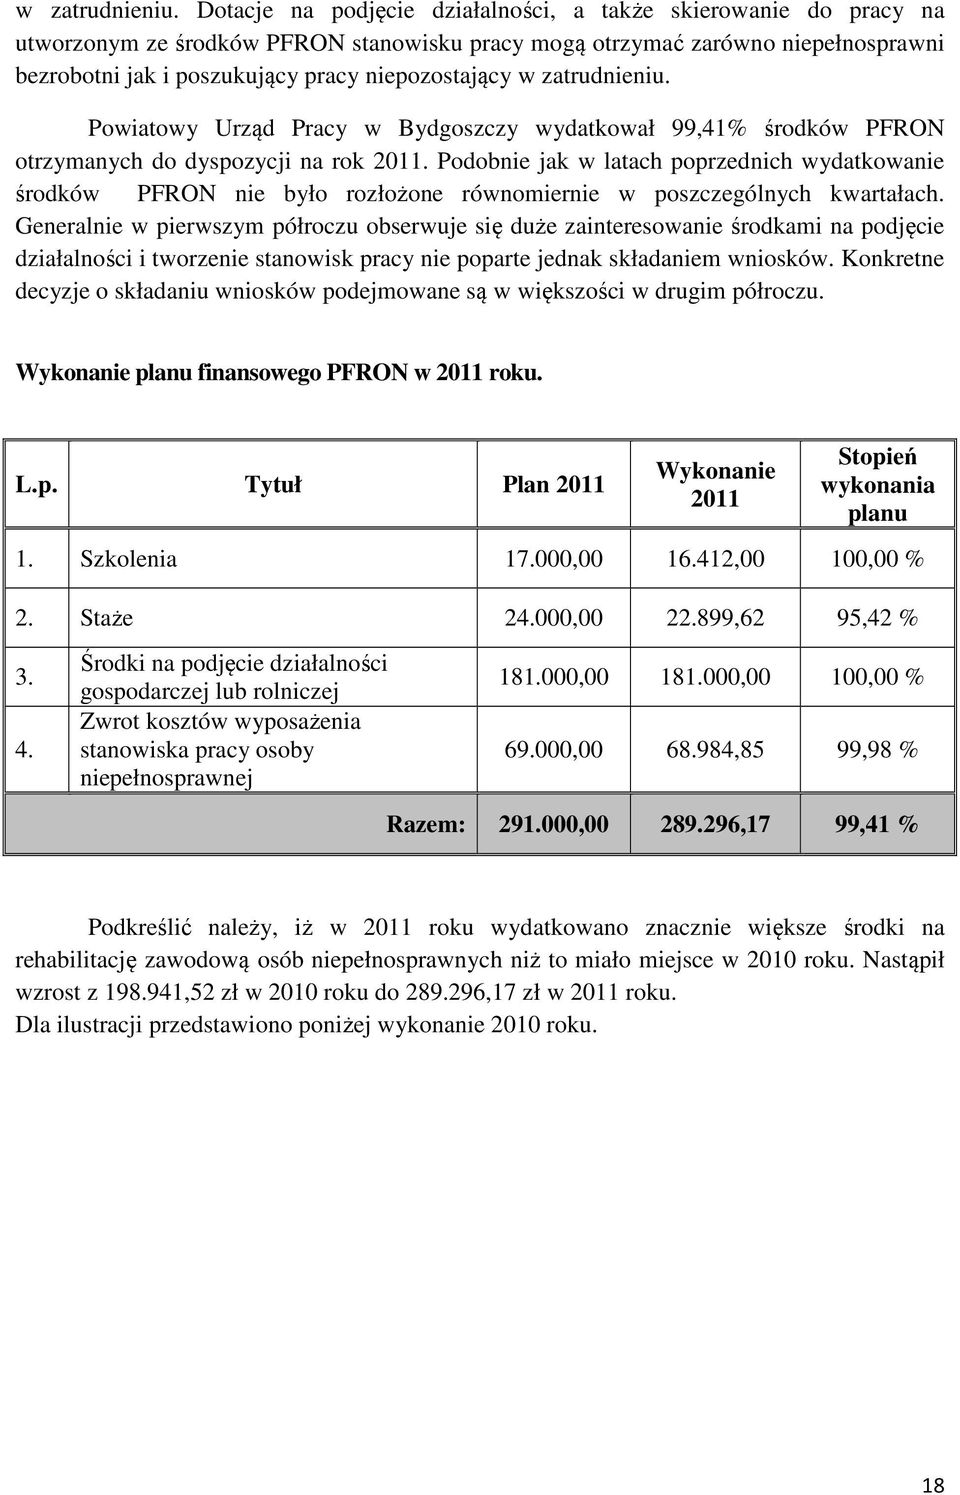 Powiatowy Urząd Pracy w Bydgoszczy wydatkował 99,41% środków PFRON otrzymanych do dyspozycji na rok 2011.